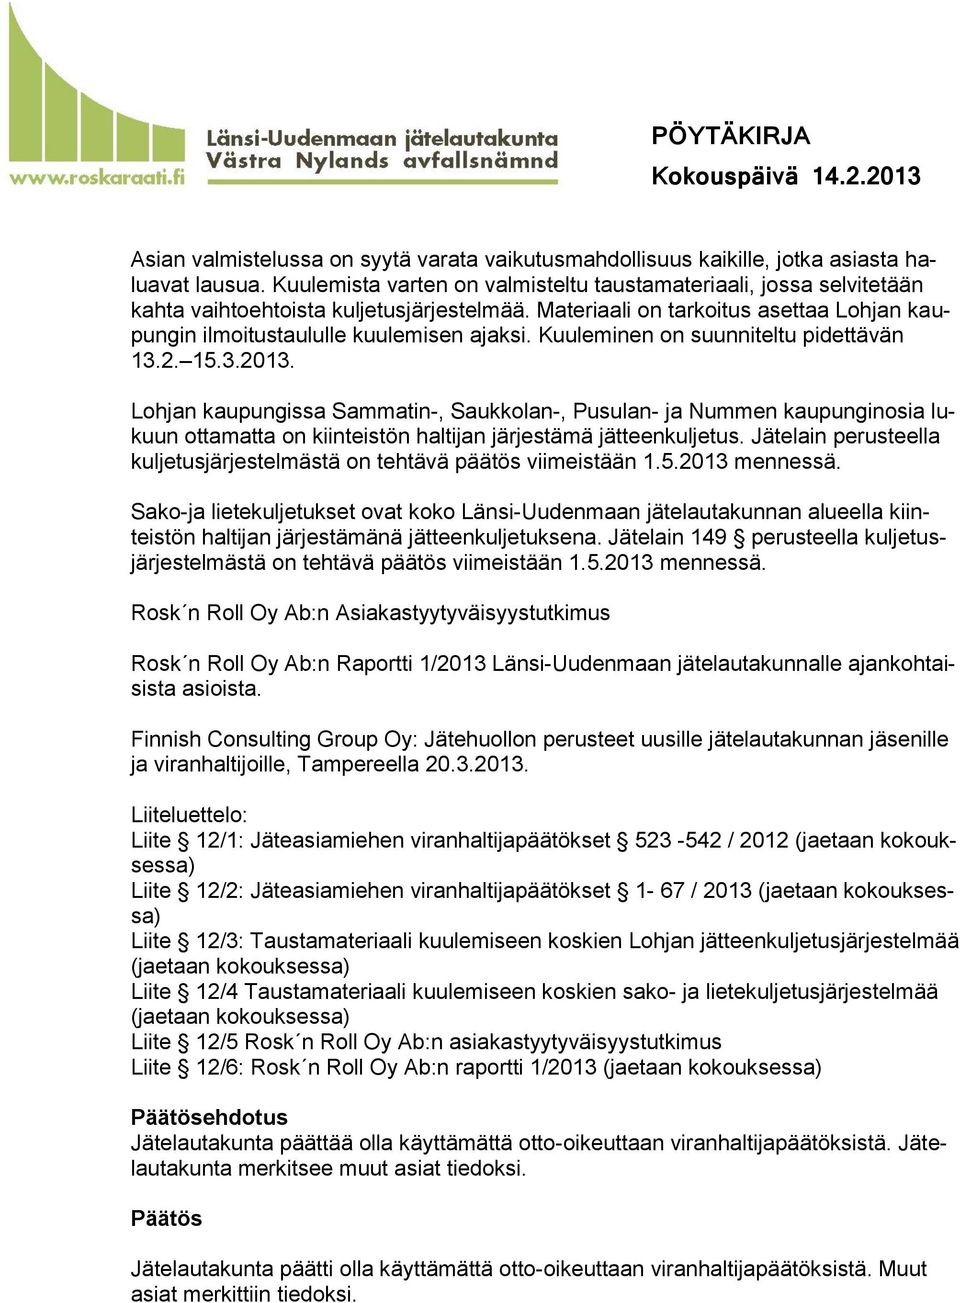 Kuuleminen on suunniteltu pidettävän 13.2. 15.3.2013. Lohjan kaupungissa Sammatin-, Saukkolan-, Pusulan- ja Nummen kaupunginosia lukuun ottamatta on kiinteistön haltijan järjestämä jätteenkuljetus.